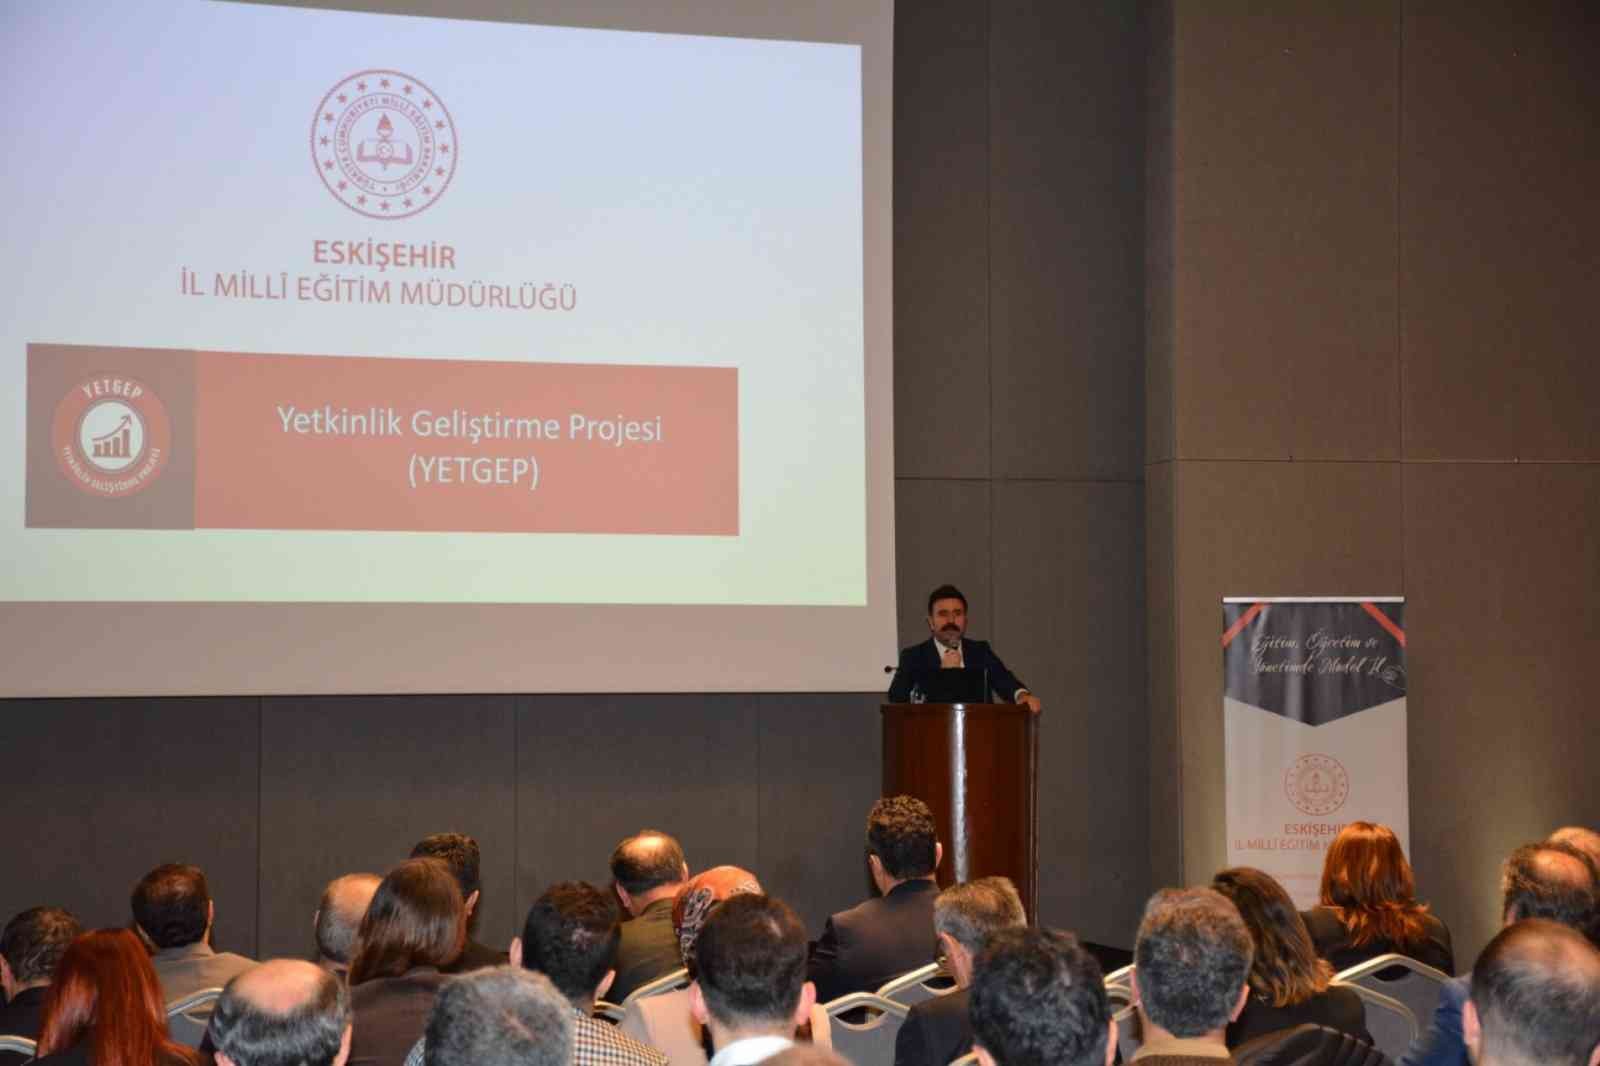 Eskişehir Milli Eğitim Müdürlüğü’nden Türkiye’ye örnek proje